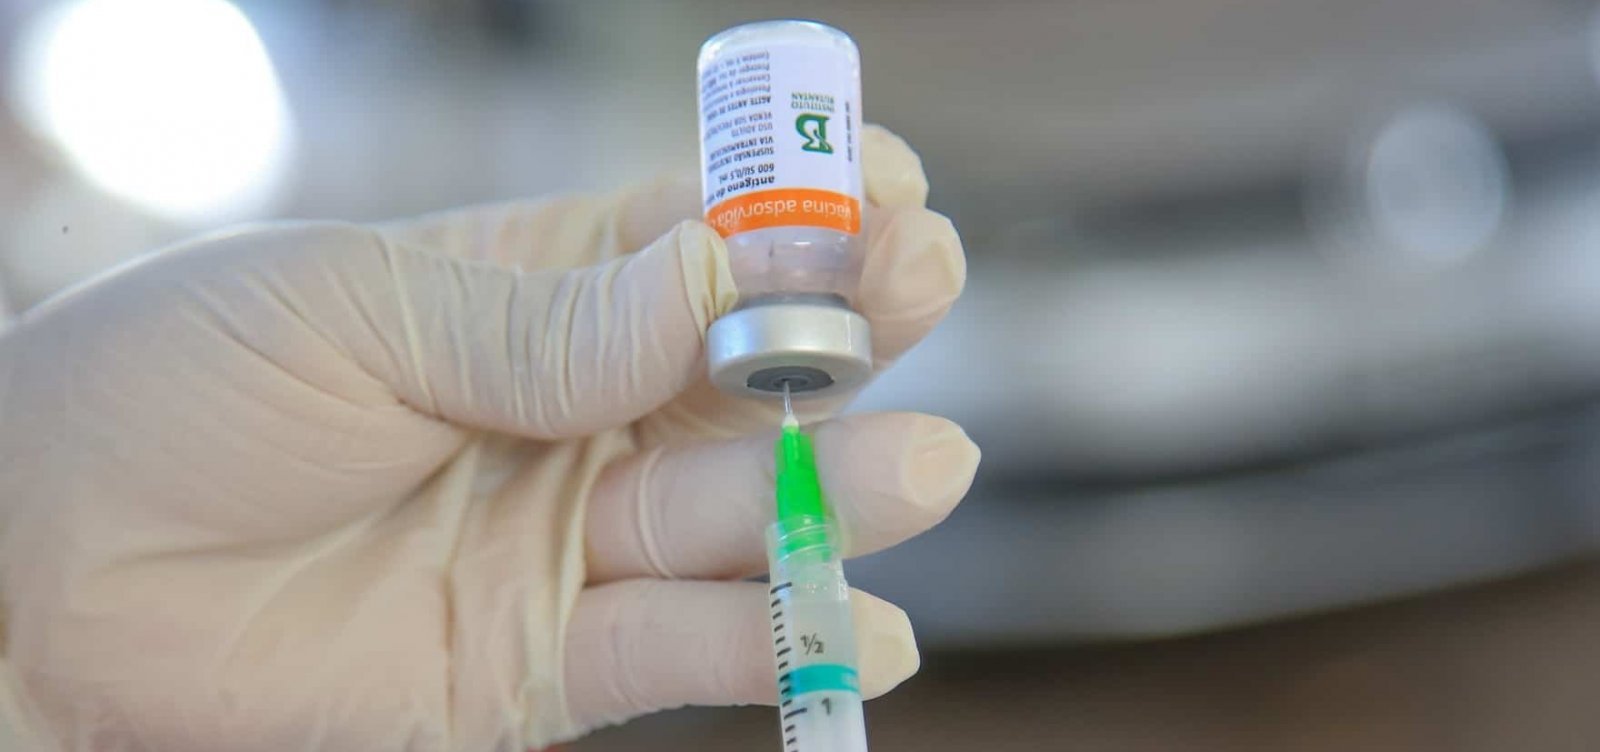 Brasil ultrapassa marca de 98 milhões de vacinados com primeira dose contra Covid-19